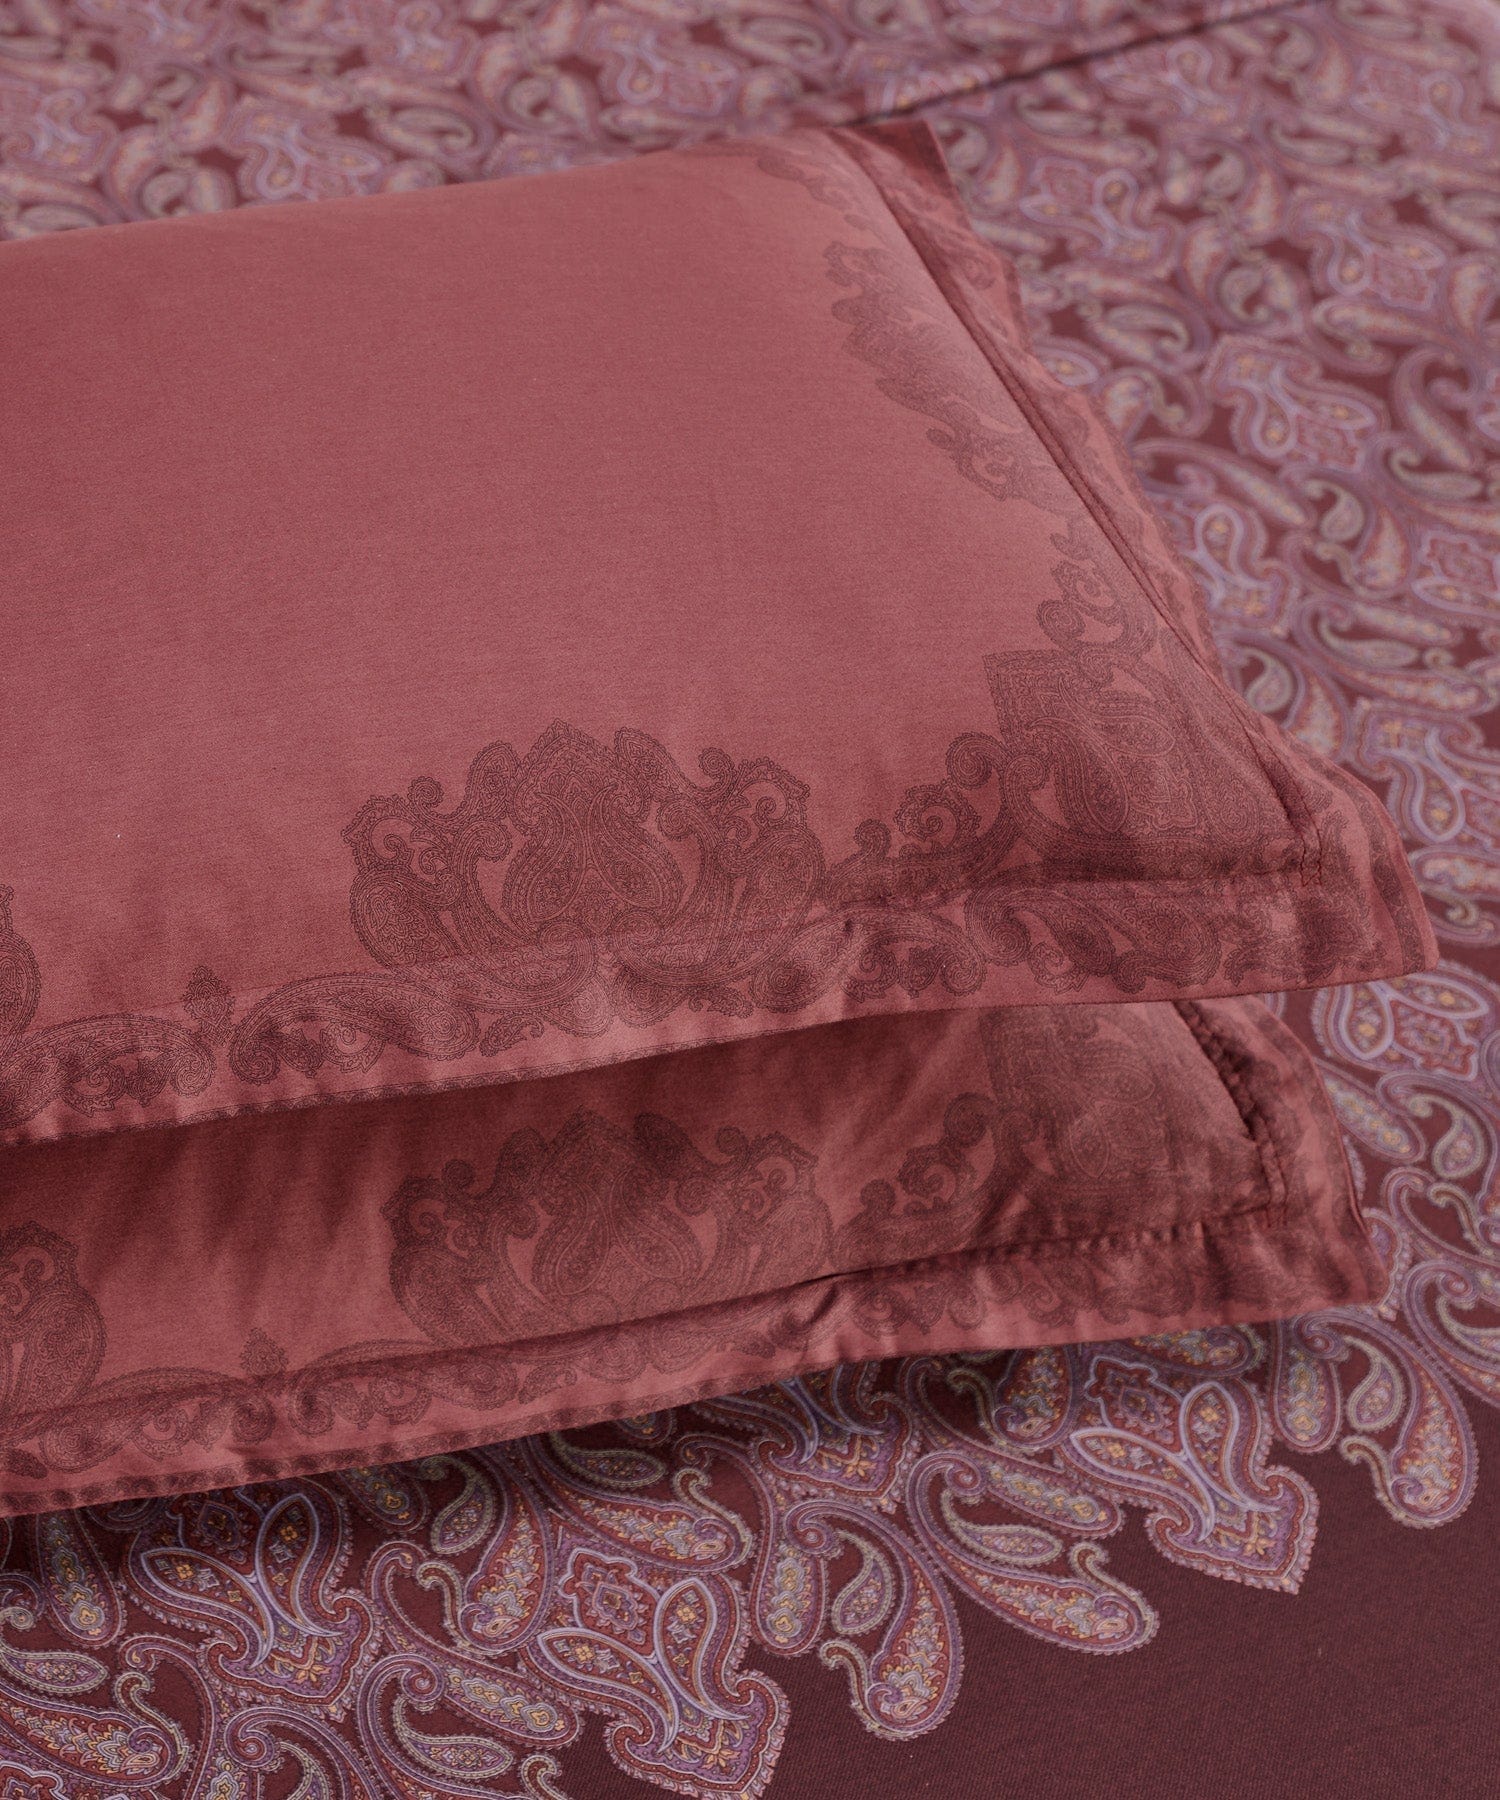 King Size Bedsheet ₹2549/-